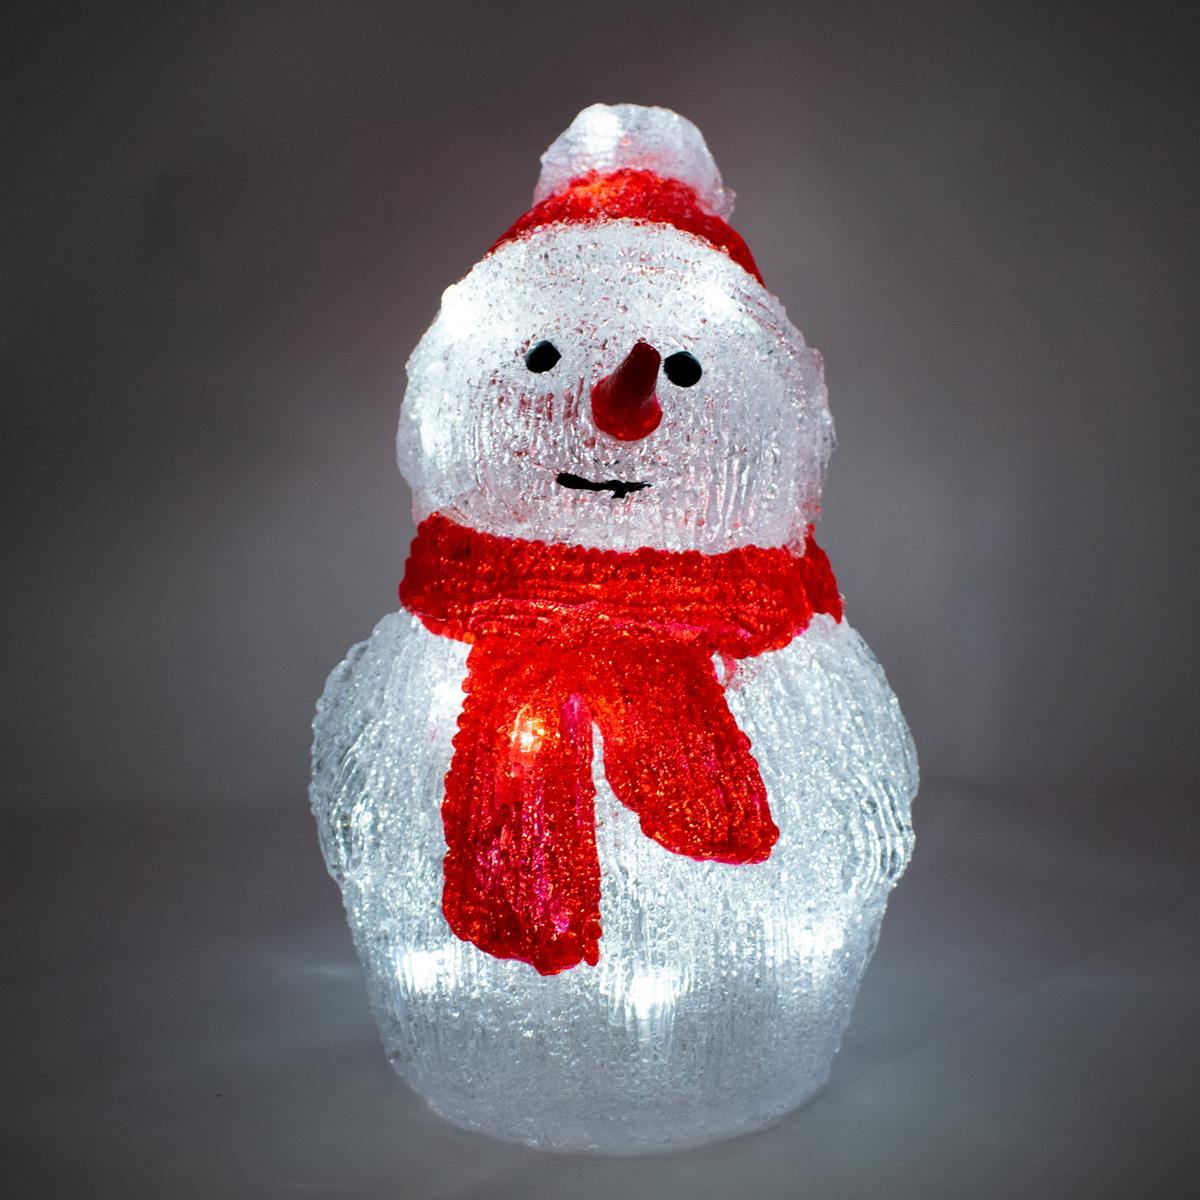 Led kerstfiguur - 20 lampjes - 2x AA batterijen - 14 x 25 centimeter - koud wit